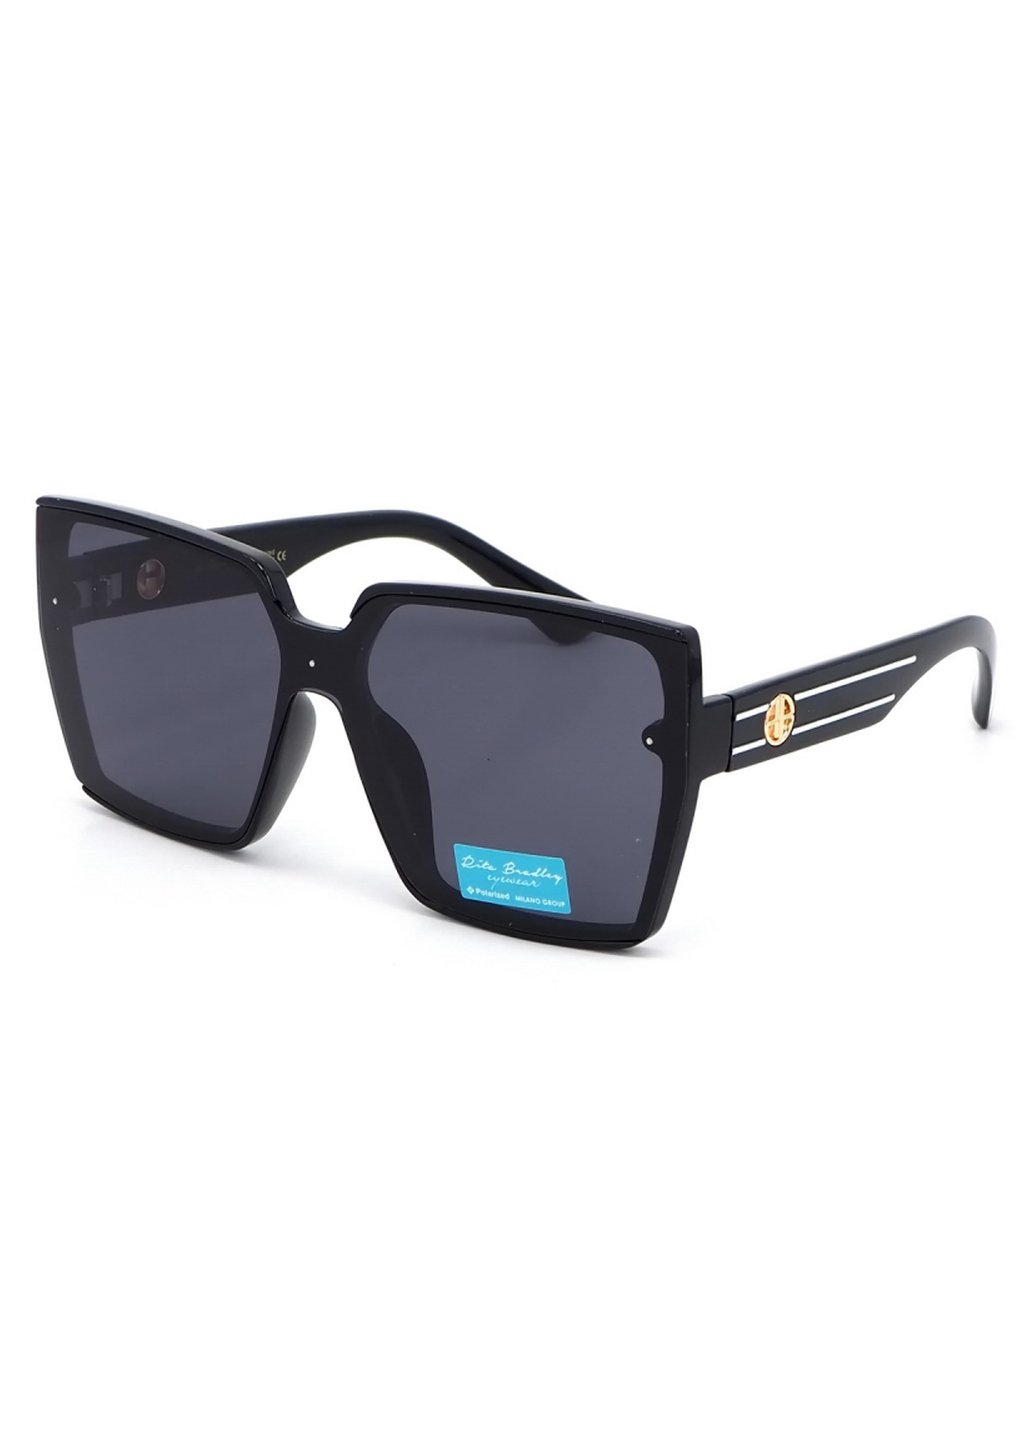 Купить Женские солнцезащитные очки Rita Bradley с поляризацией RB733 112087 в интернет-магазине